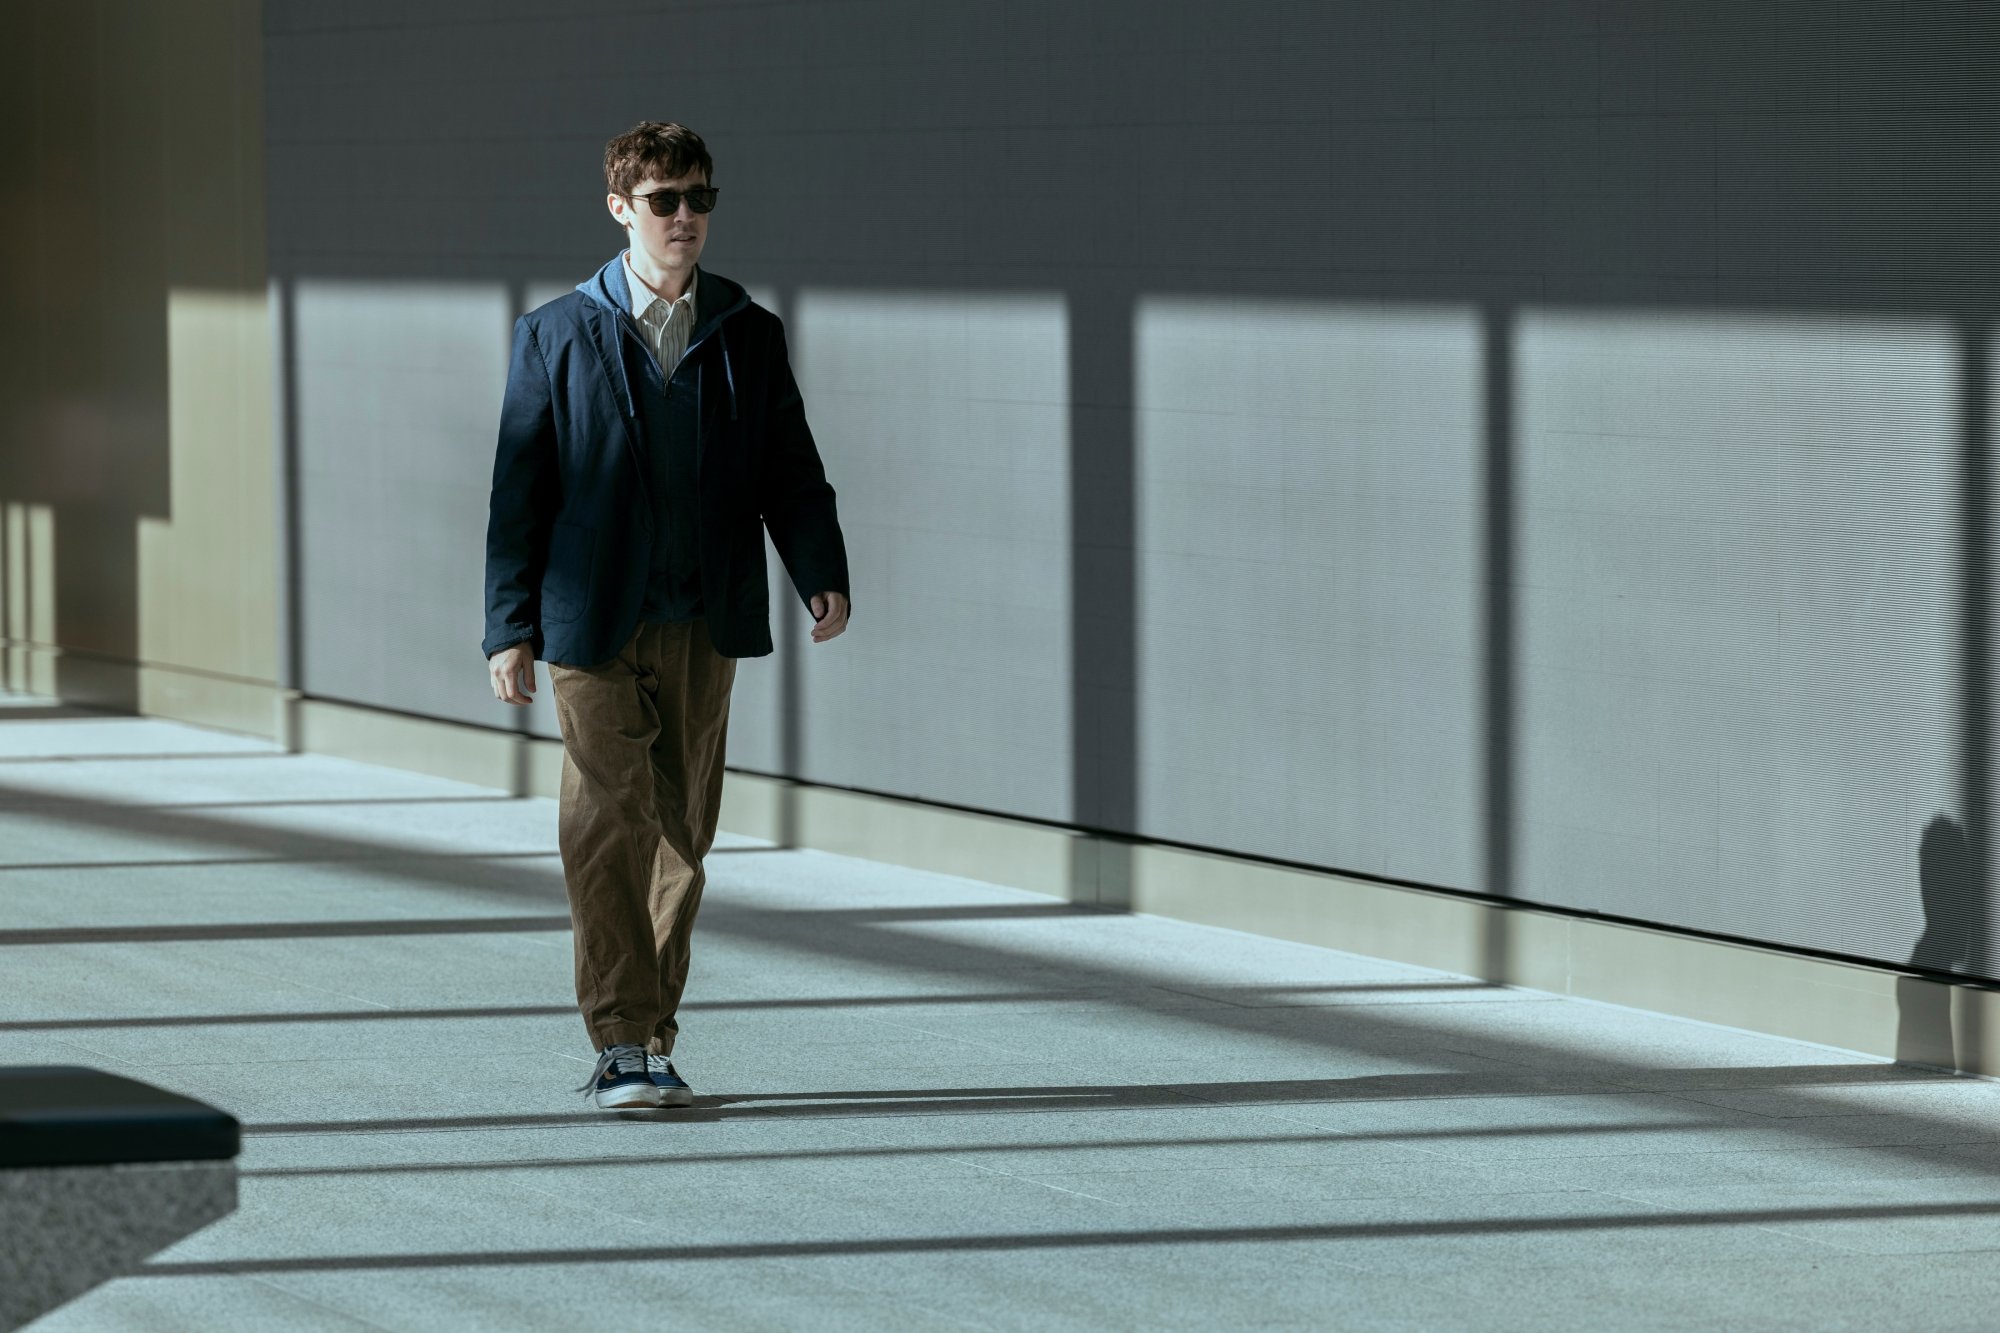 Un homme portant des lunettes de soleil traverse le hall d’un immeuble clairsemé.